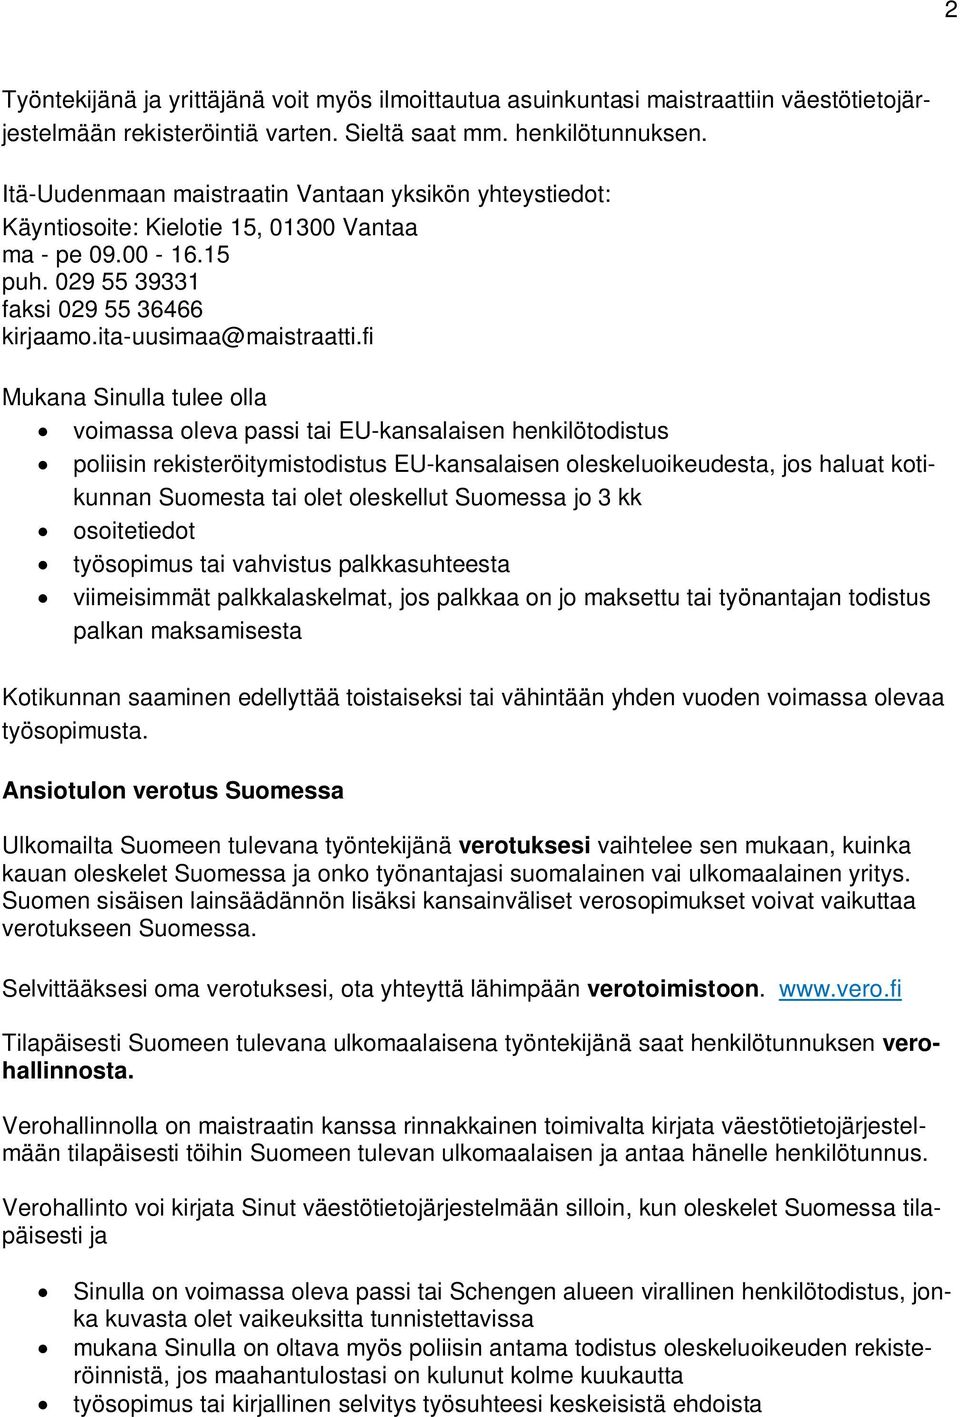 fi poliisin rekisteröitymistodistus EU-kansalaisen oleskeluoikeudesta, jos haluat kotikunnan Suomesta tai olet oleskellut Suomessa jo 3 kk osoitetiedot työsopimus tai vahvistus palkkasuhteesta